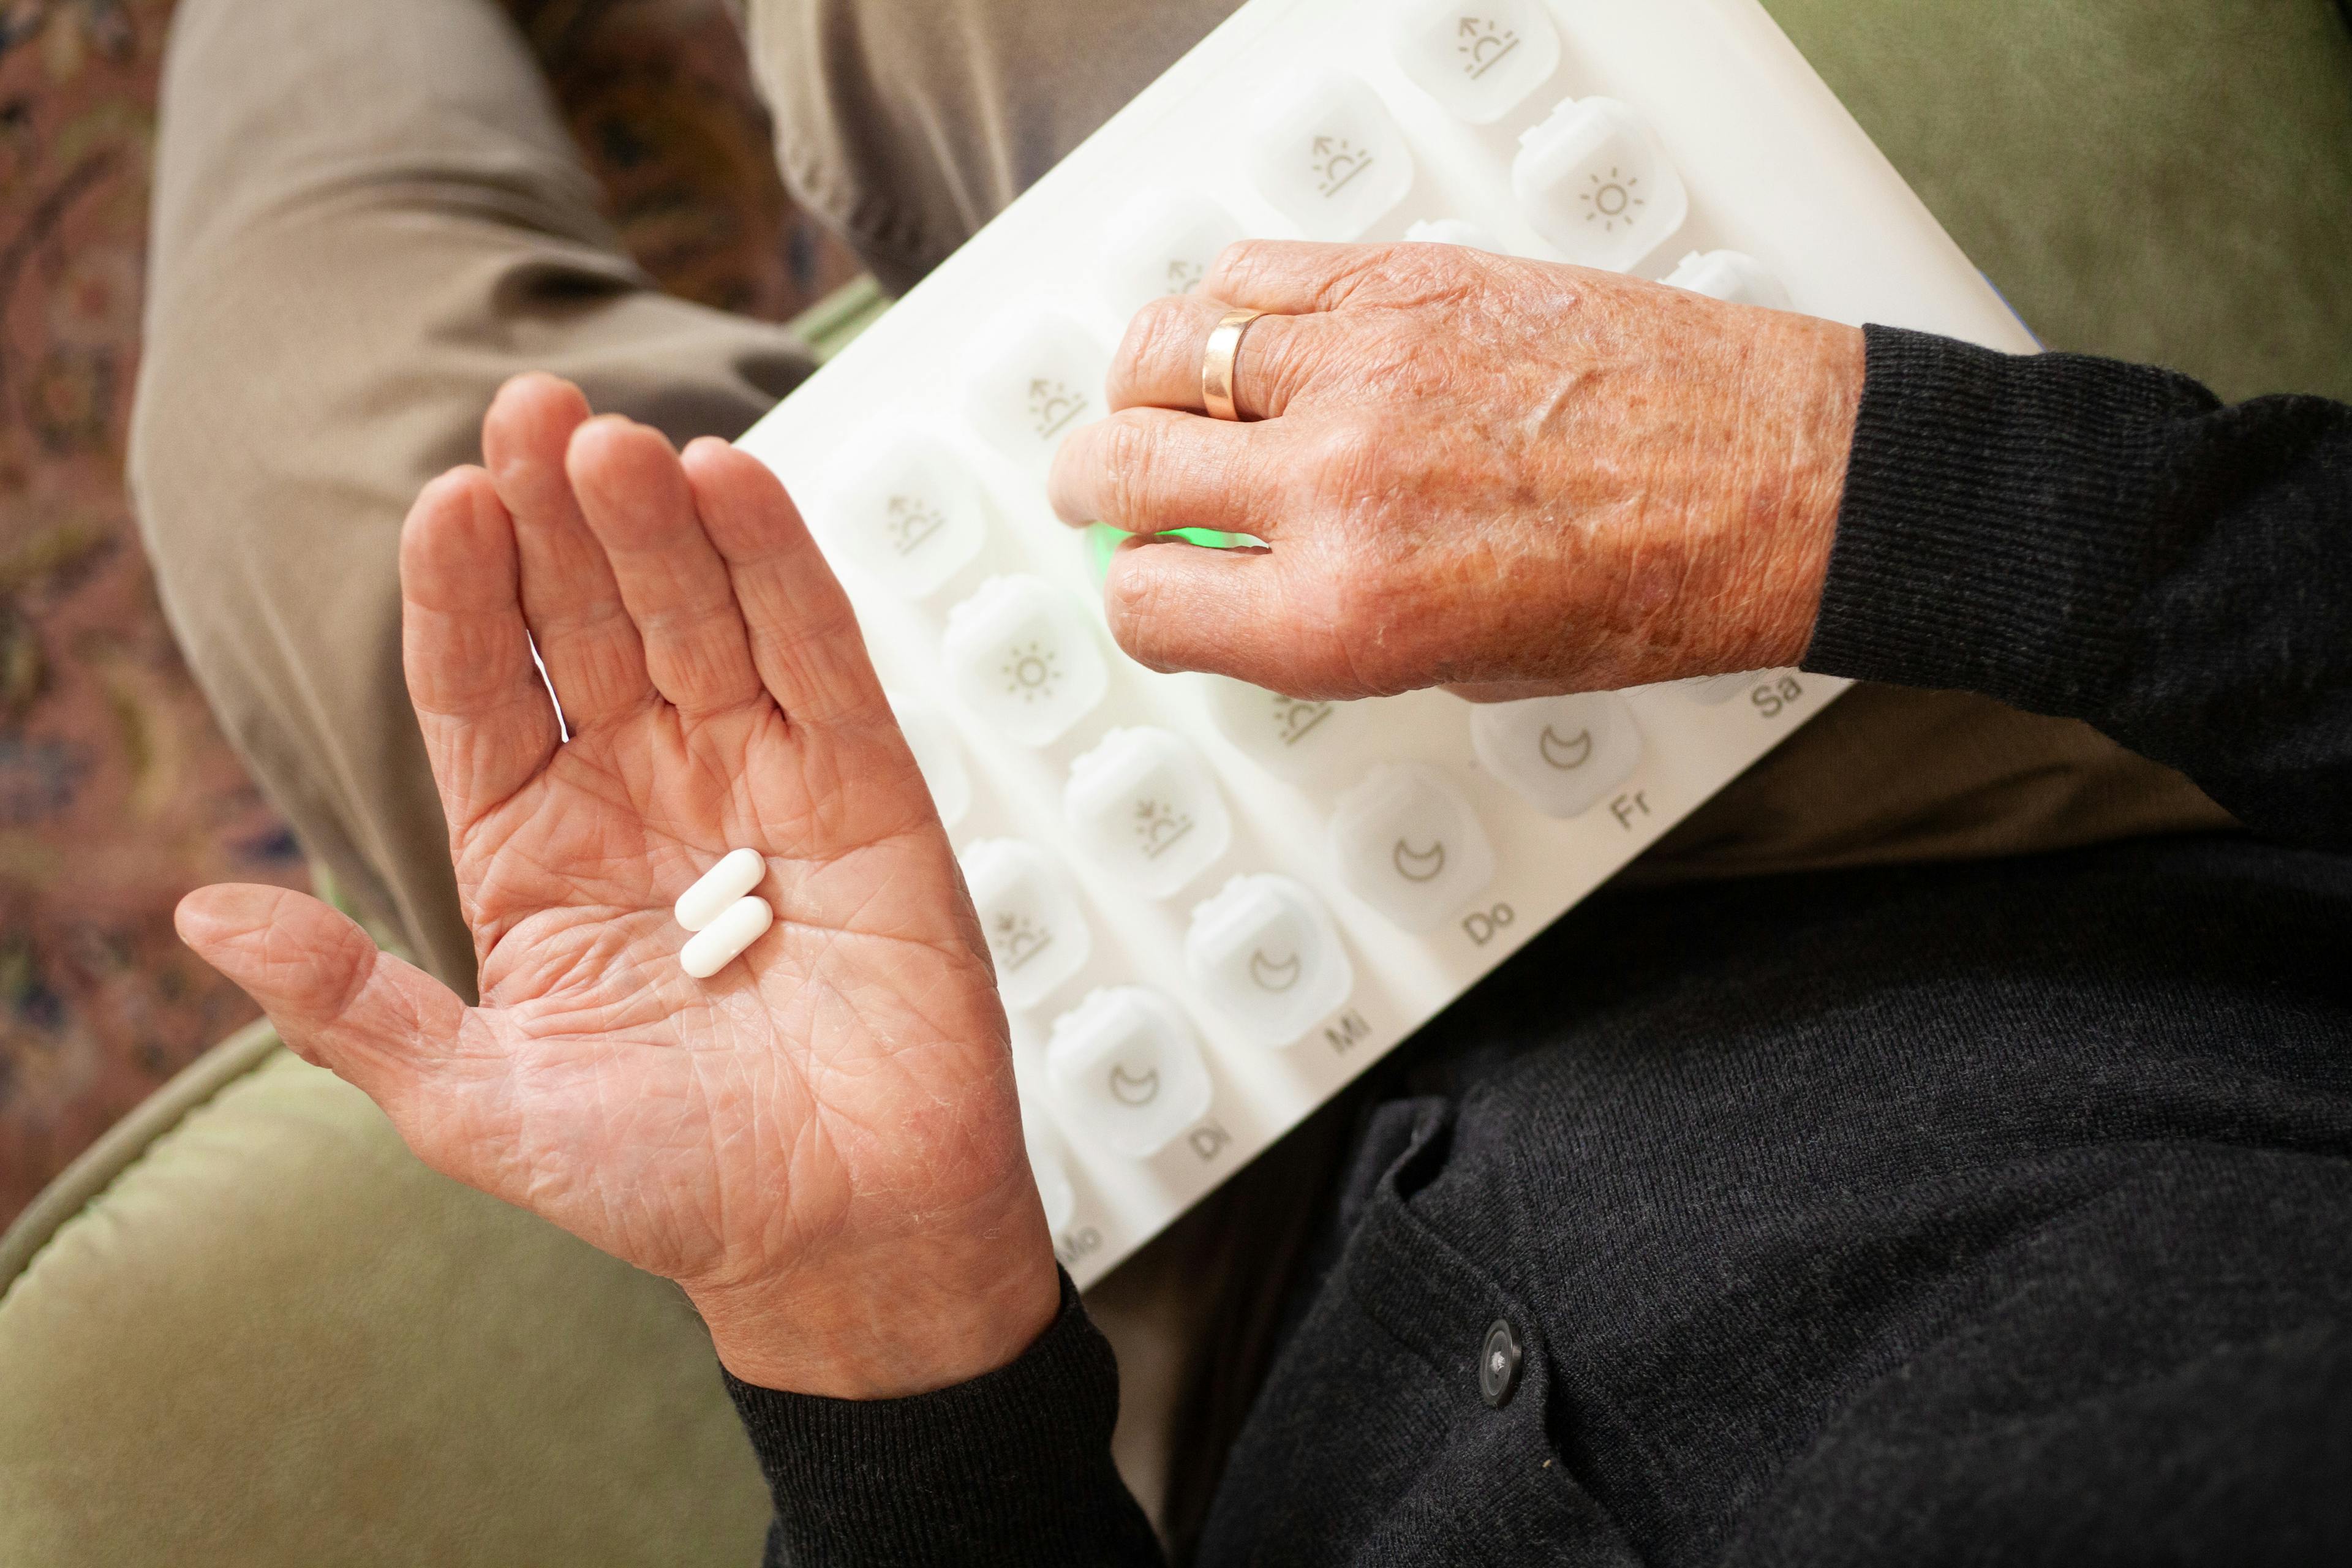 Medikamente in Hand mit Medikamentenspender von oben fotografiert